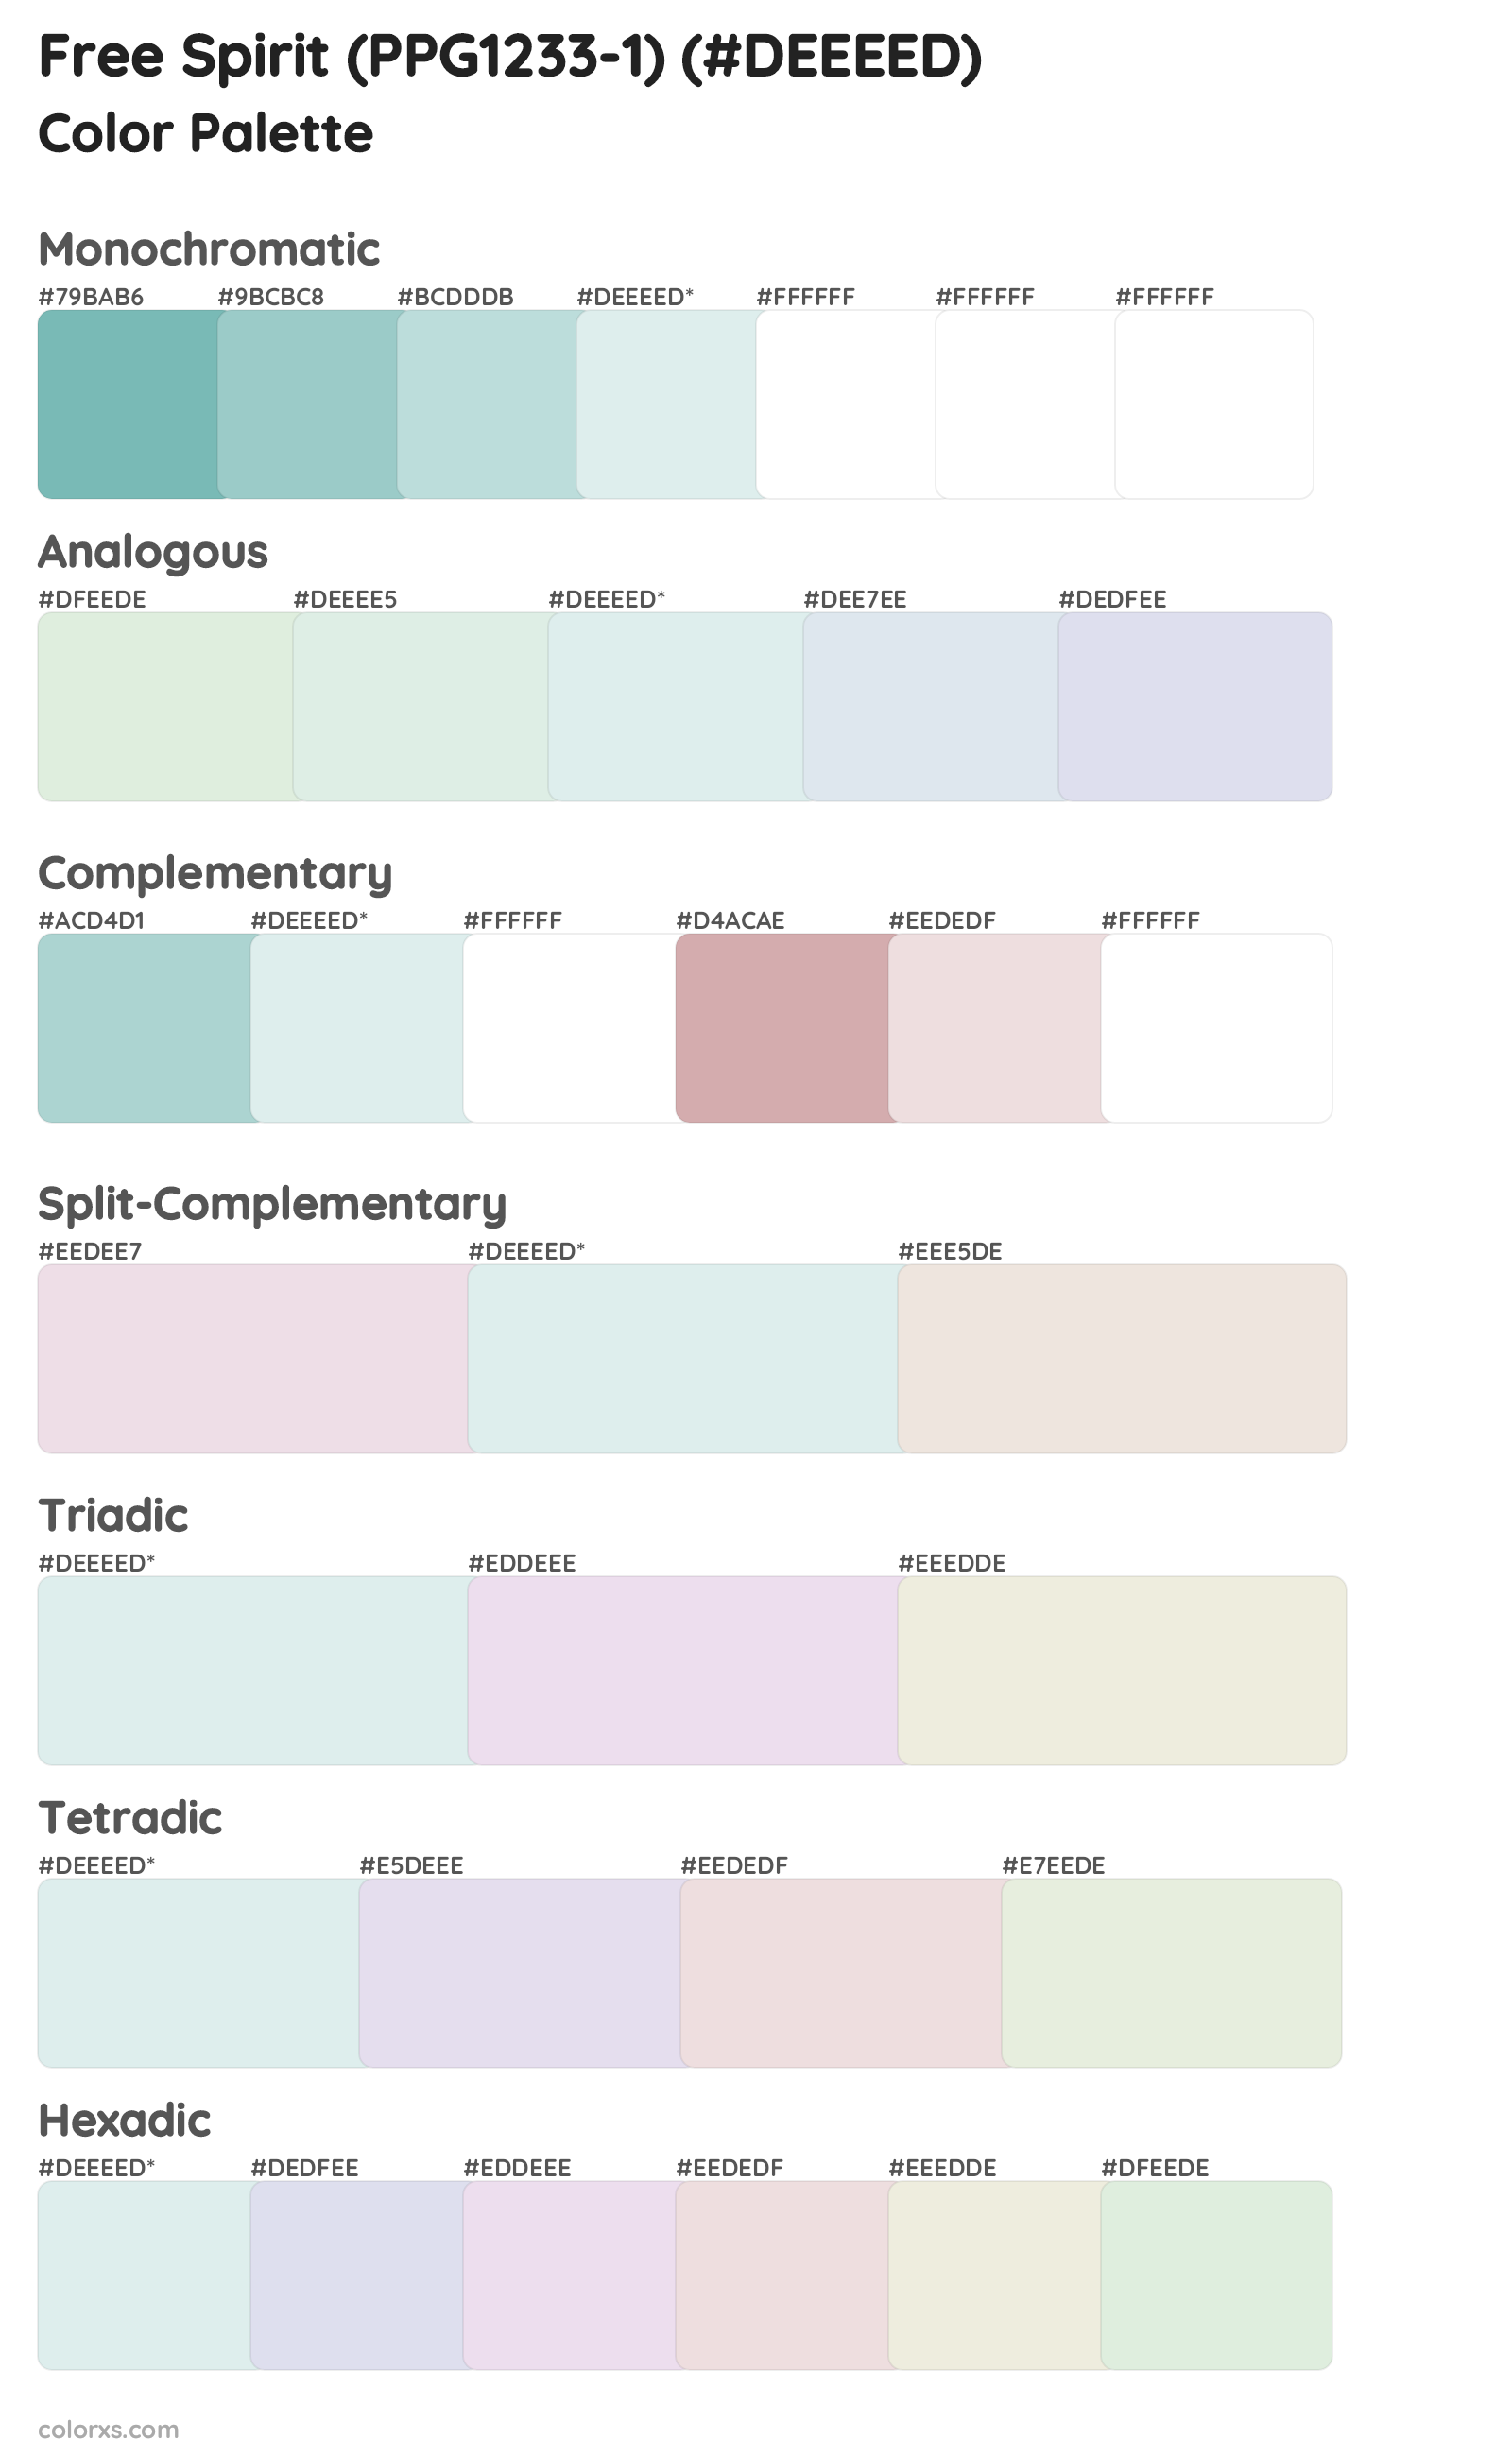 Free Spirit (PPG1233-1) Color Scheme Palettes